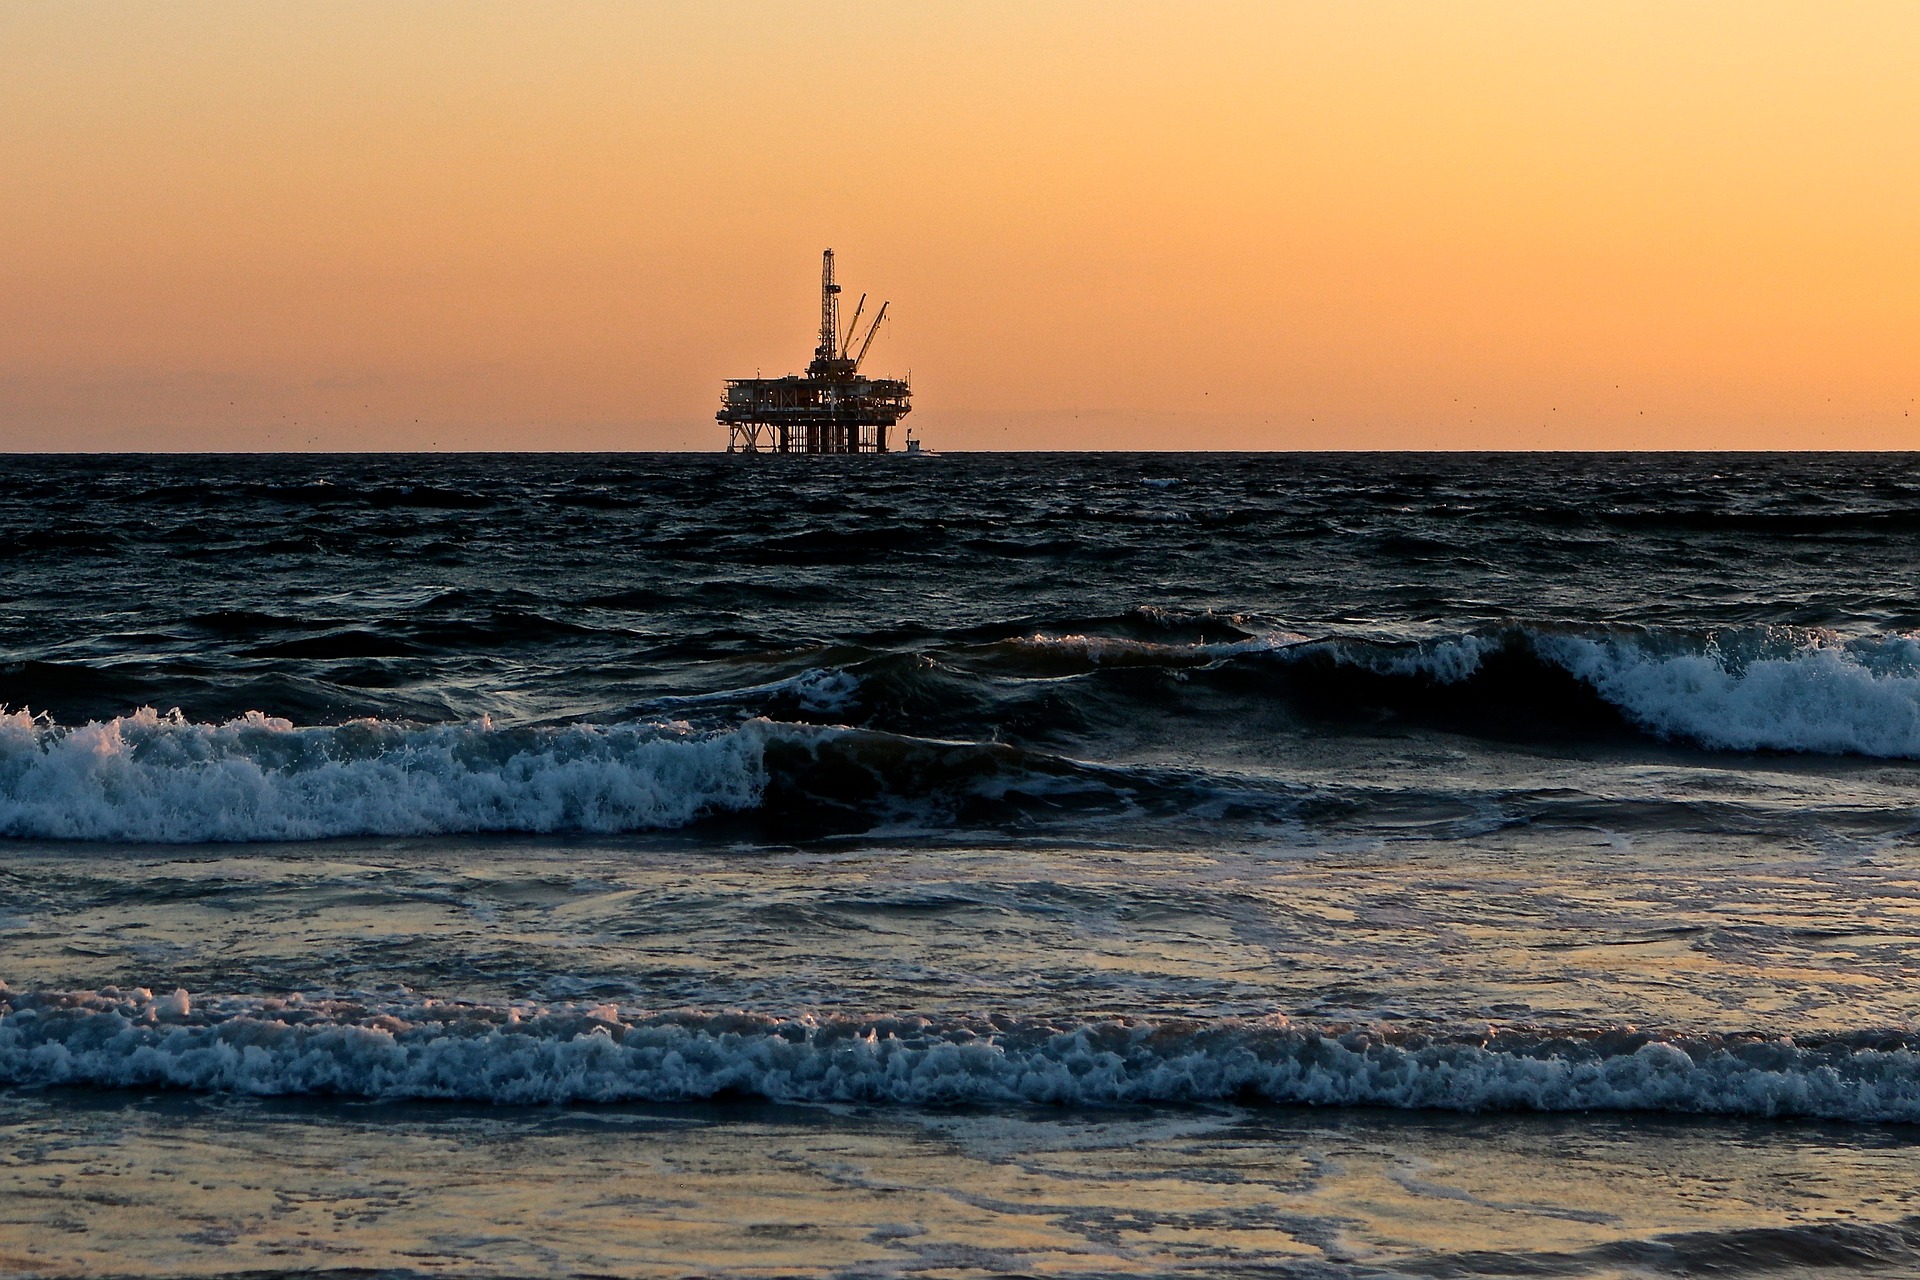 Oil exploration in the sea